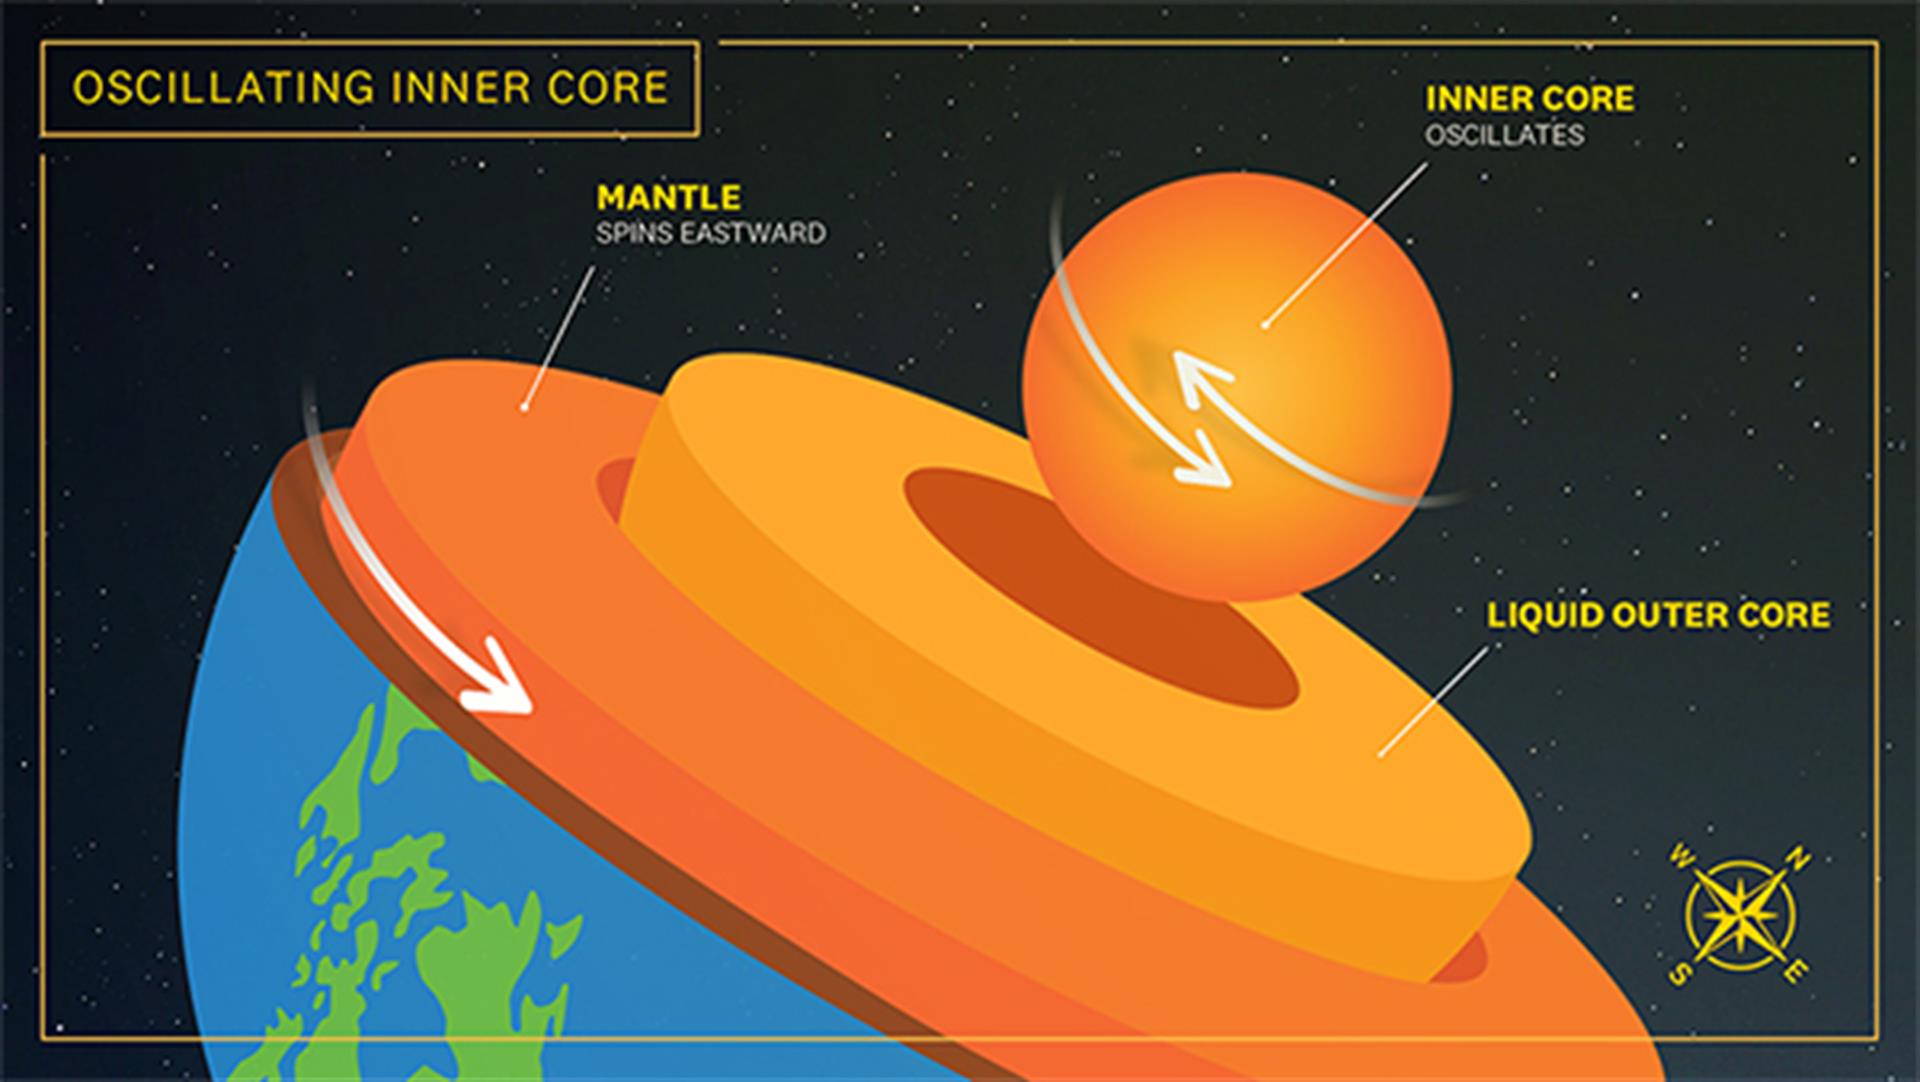 Confirmado: El núcleo interno de la Tierra oscila y podría explicar la variación de la duración del día